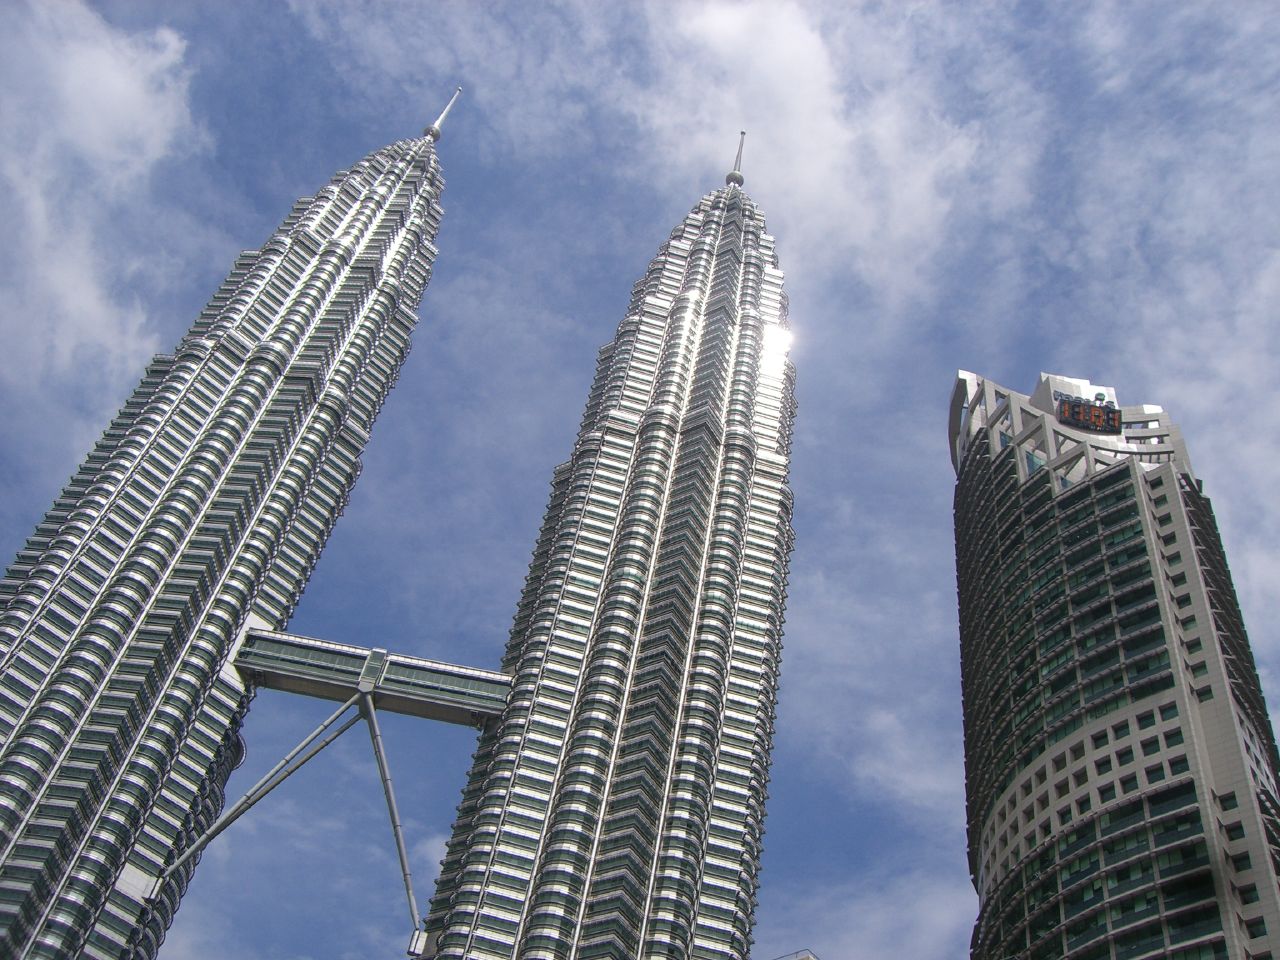 Petronas Tower 1